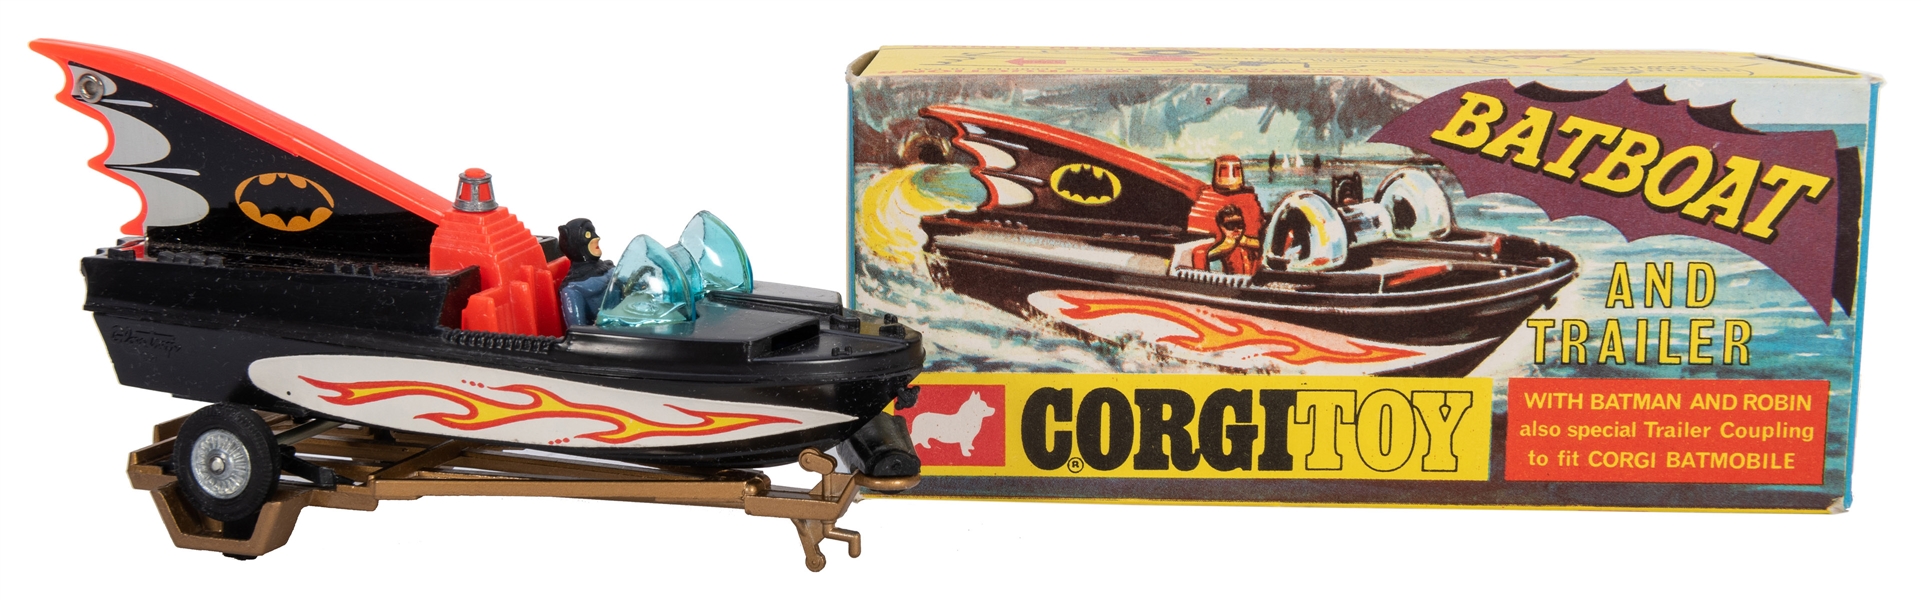  Corgi Bat-Boat and Trailer #107 in Original Box. 1967.